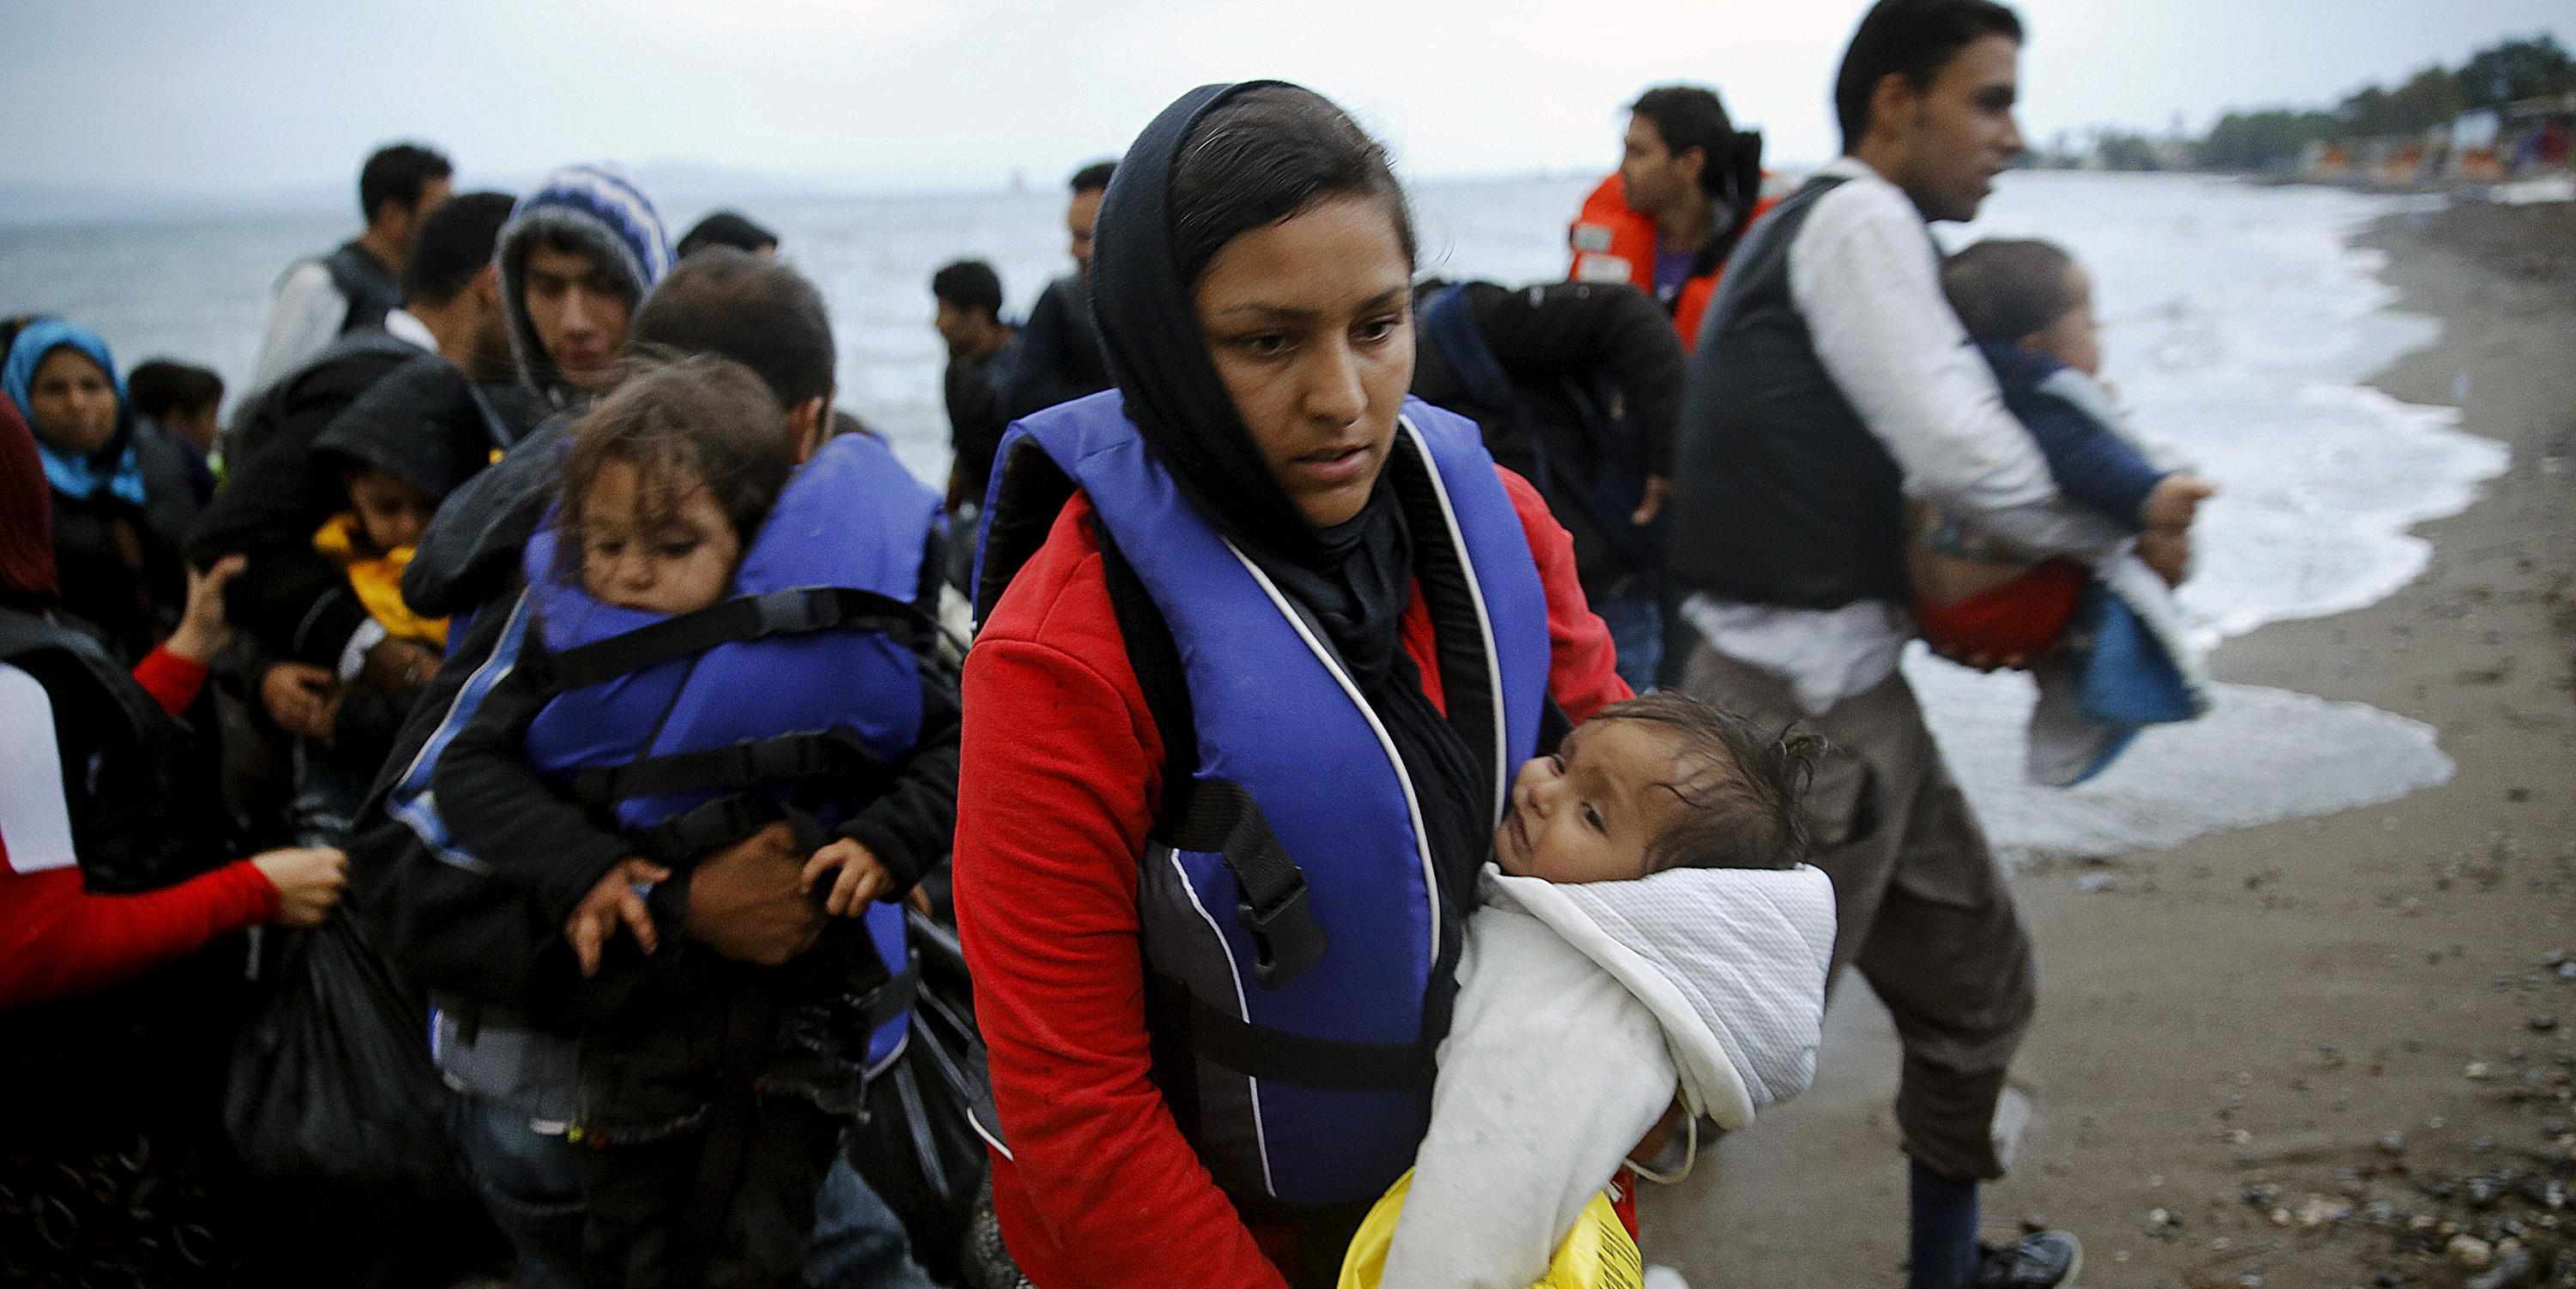 Europe et choc migratoire 2011-2020 : presque dix ans de dissensions politiques